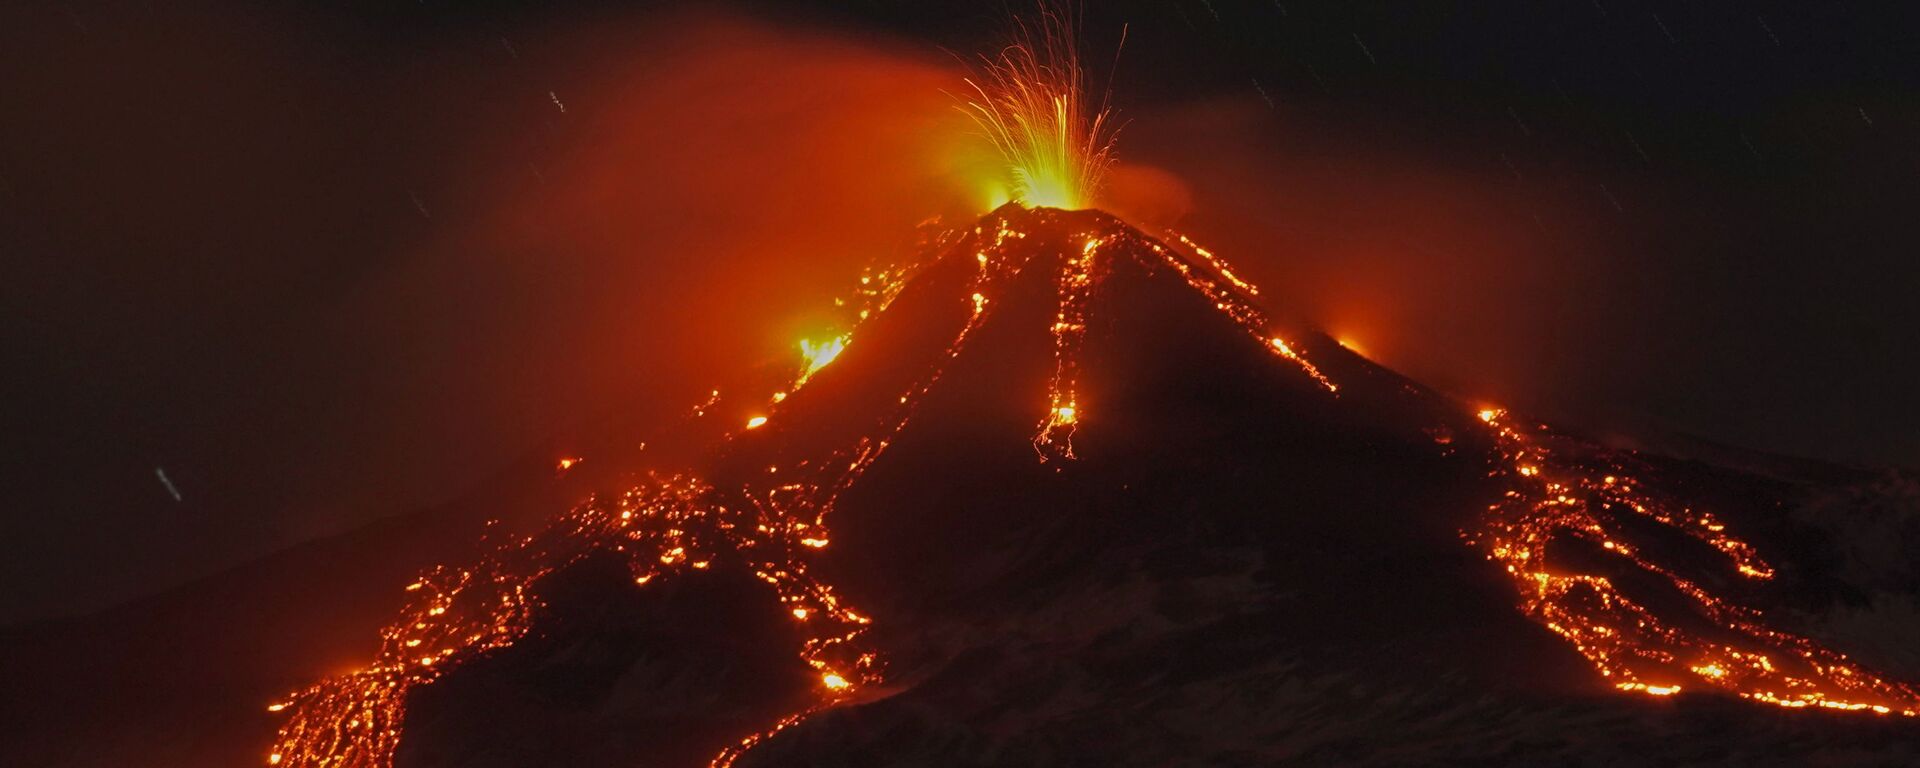 Извержение вулкана Этна, Италия - Sputnik Mundo, 1920, 19.02.2021